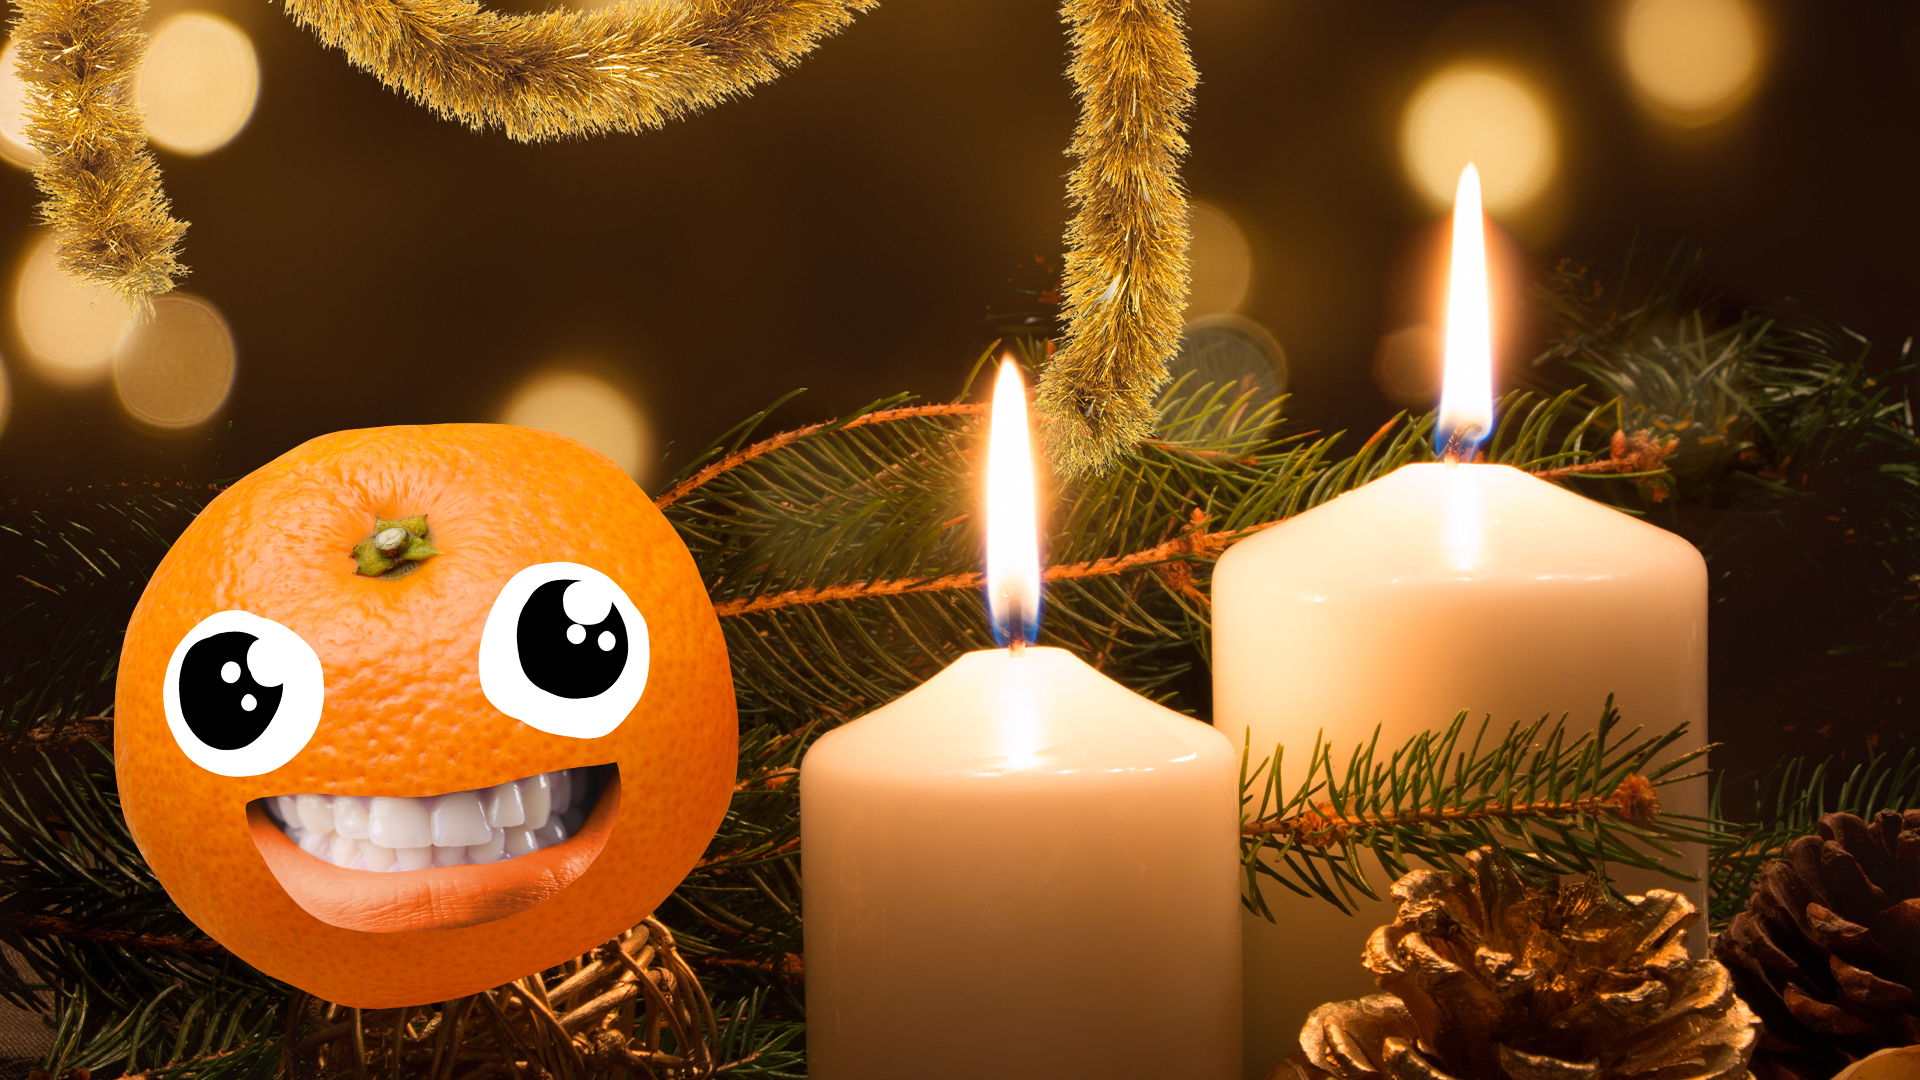 Beano tangerine in Christmassy scene 